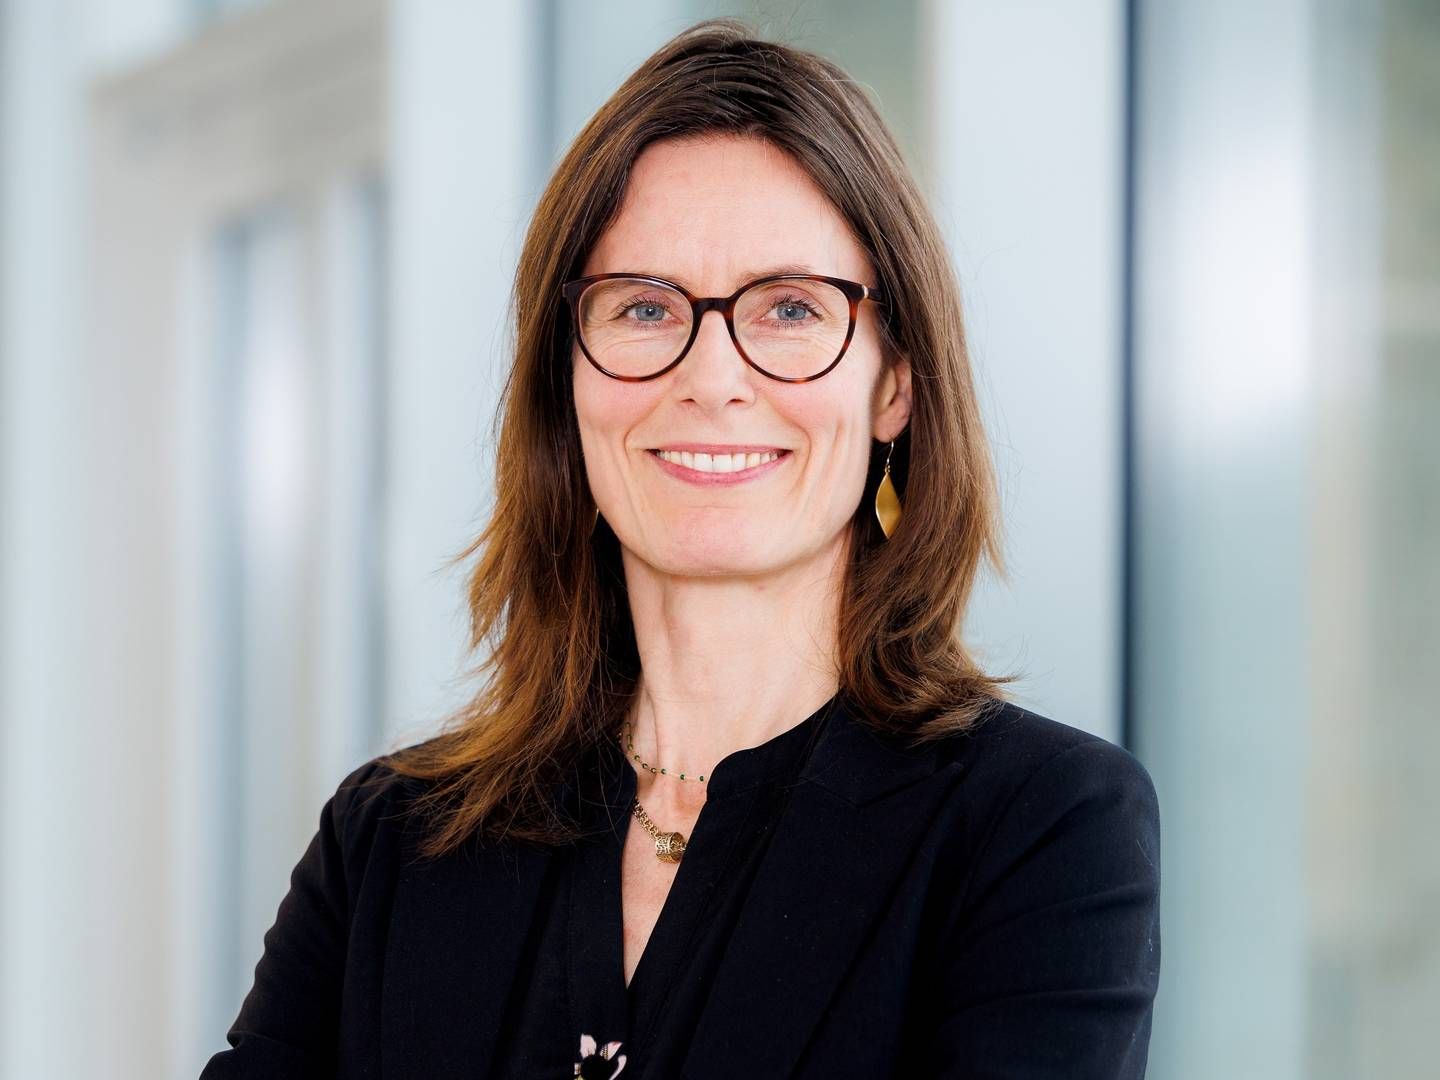 Marianne Ølholm stopper som forperson i Medicoindustrien efter blot et år. | Foto: Medicoindustrien / Pr